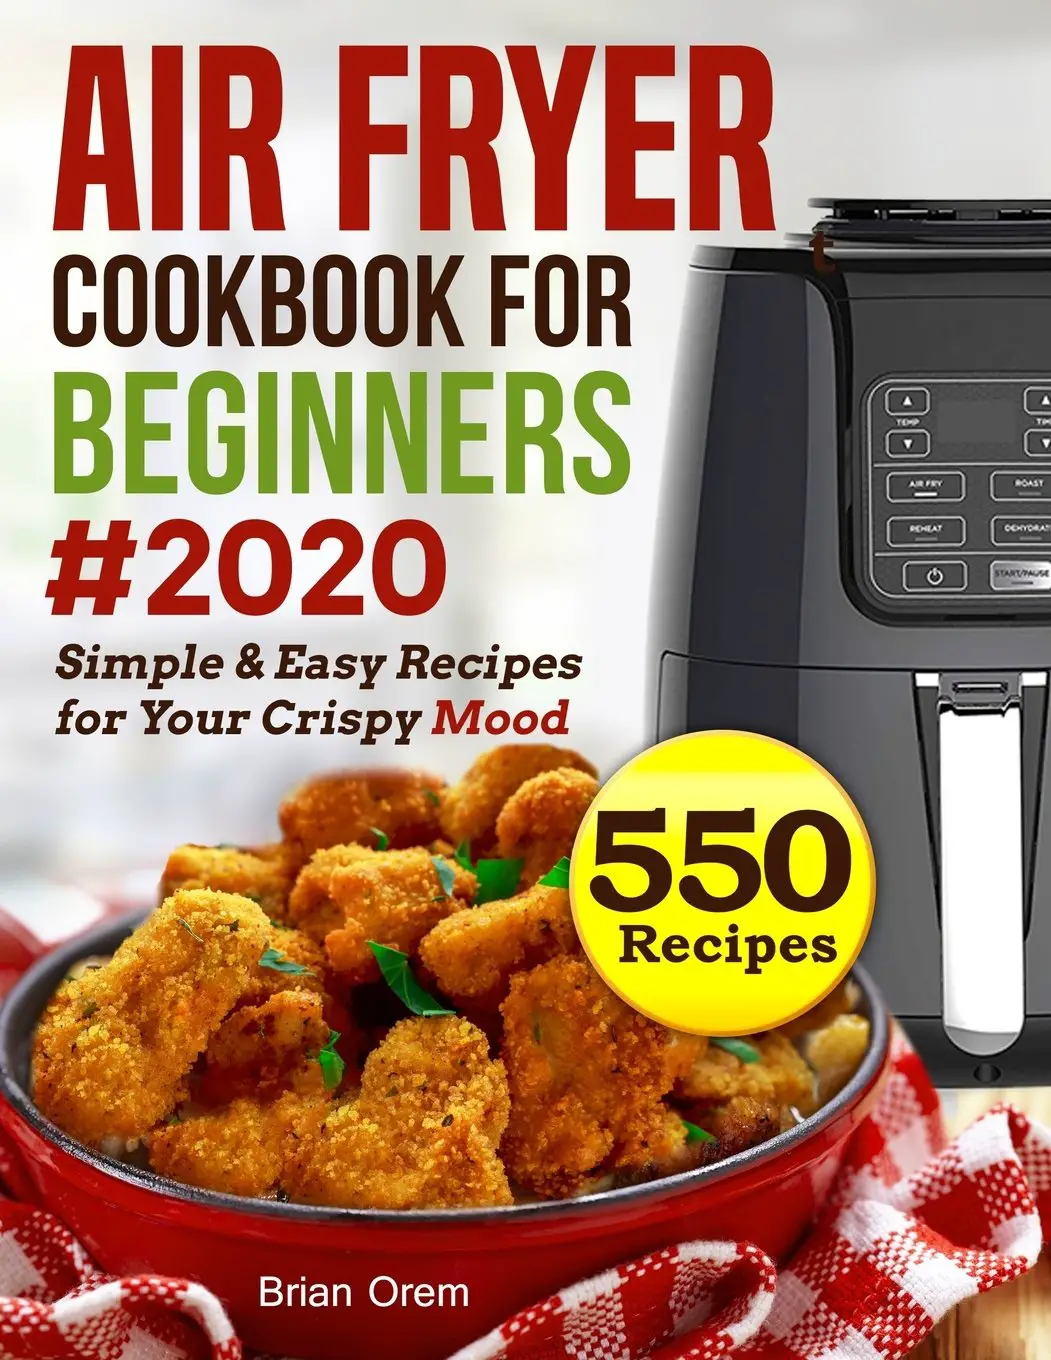 550 Air Fryer Recipes Cookbook: Air Fryer Cookbook For Beginners #2020 ...